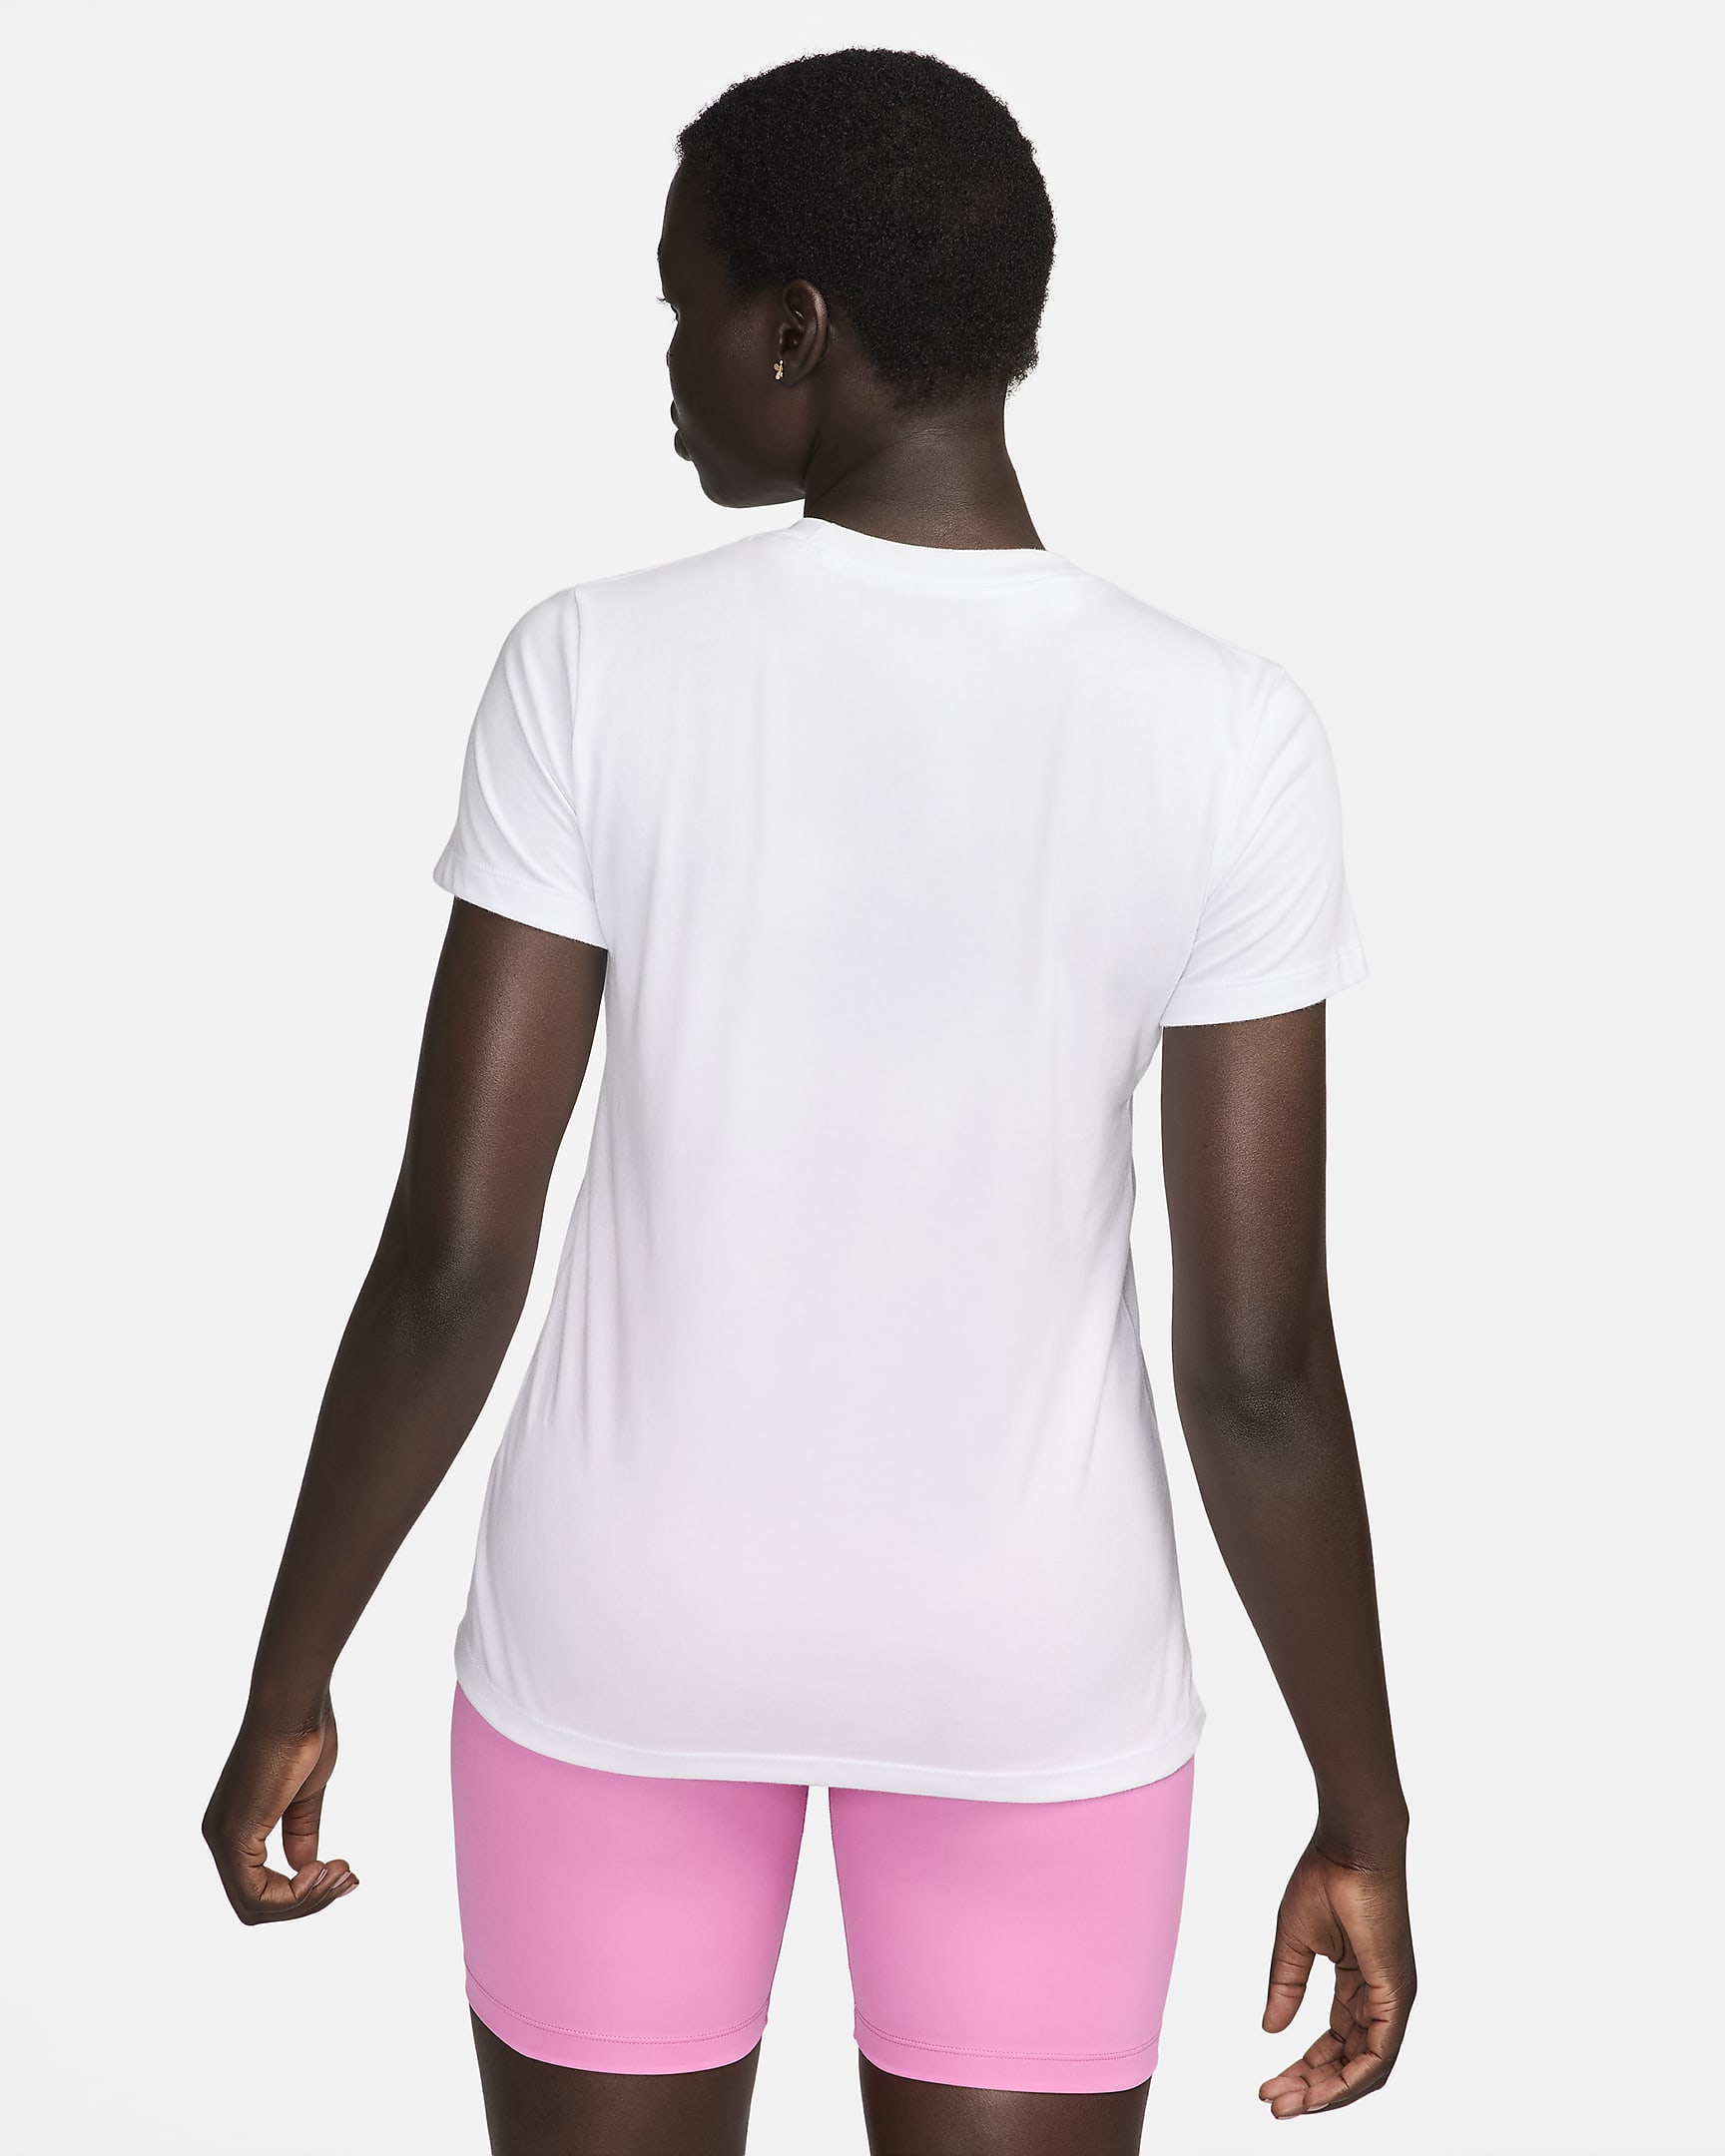 Nike Women's Cheer T-Shirt. Nike.com